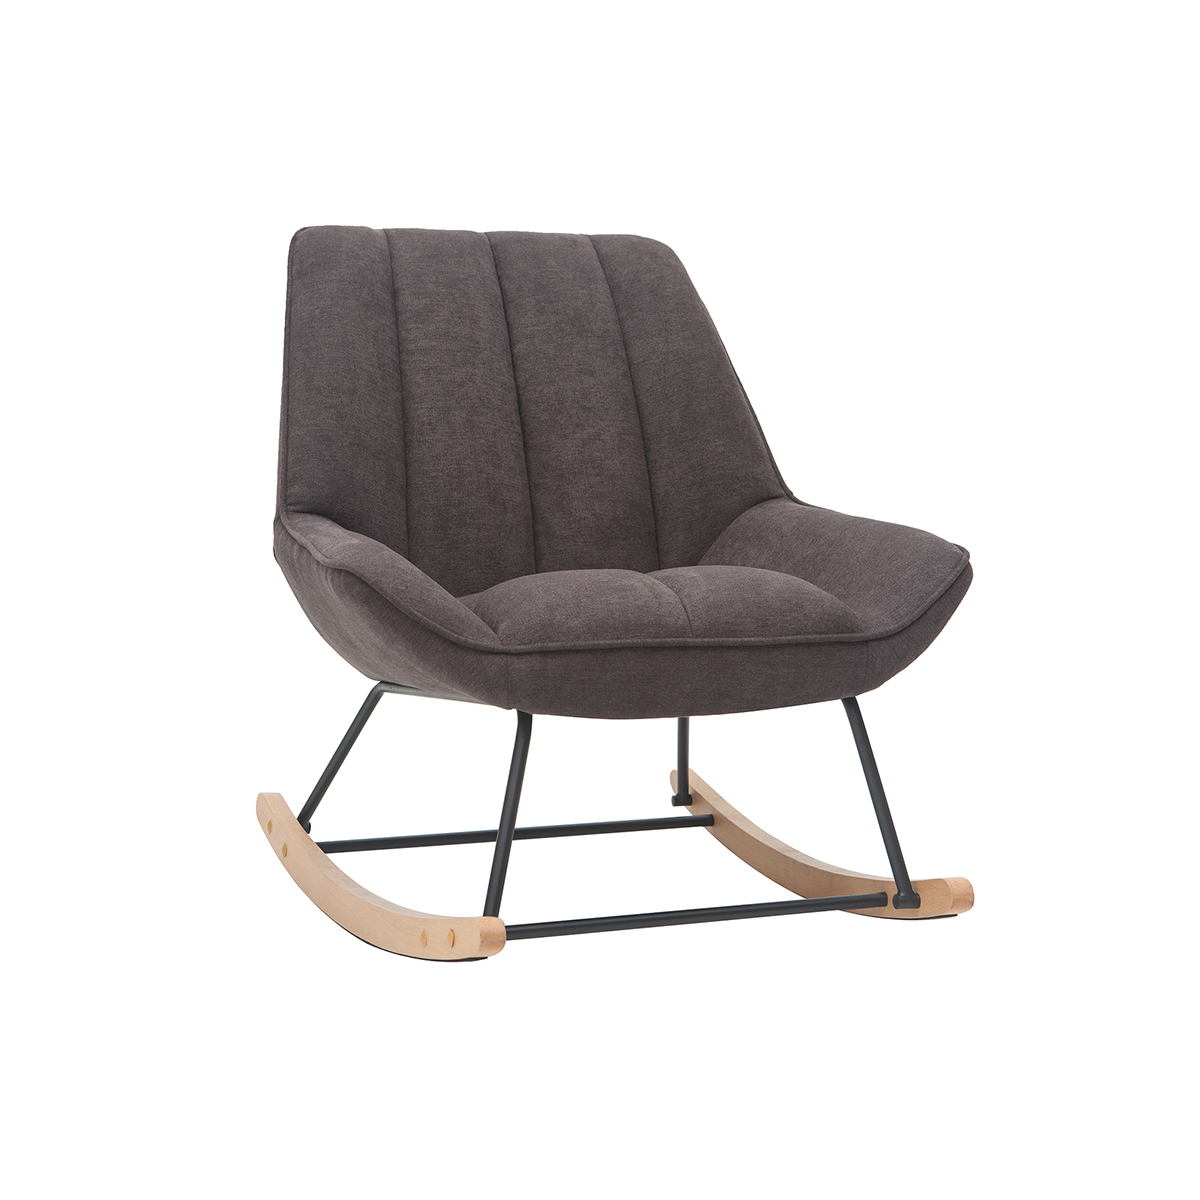 Rocking chair design en tissu effet velours gris foncé, métal noir et bois clair BILLIE vue1